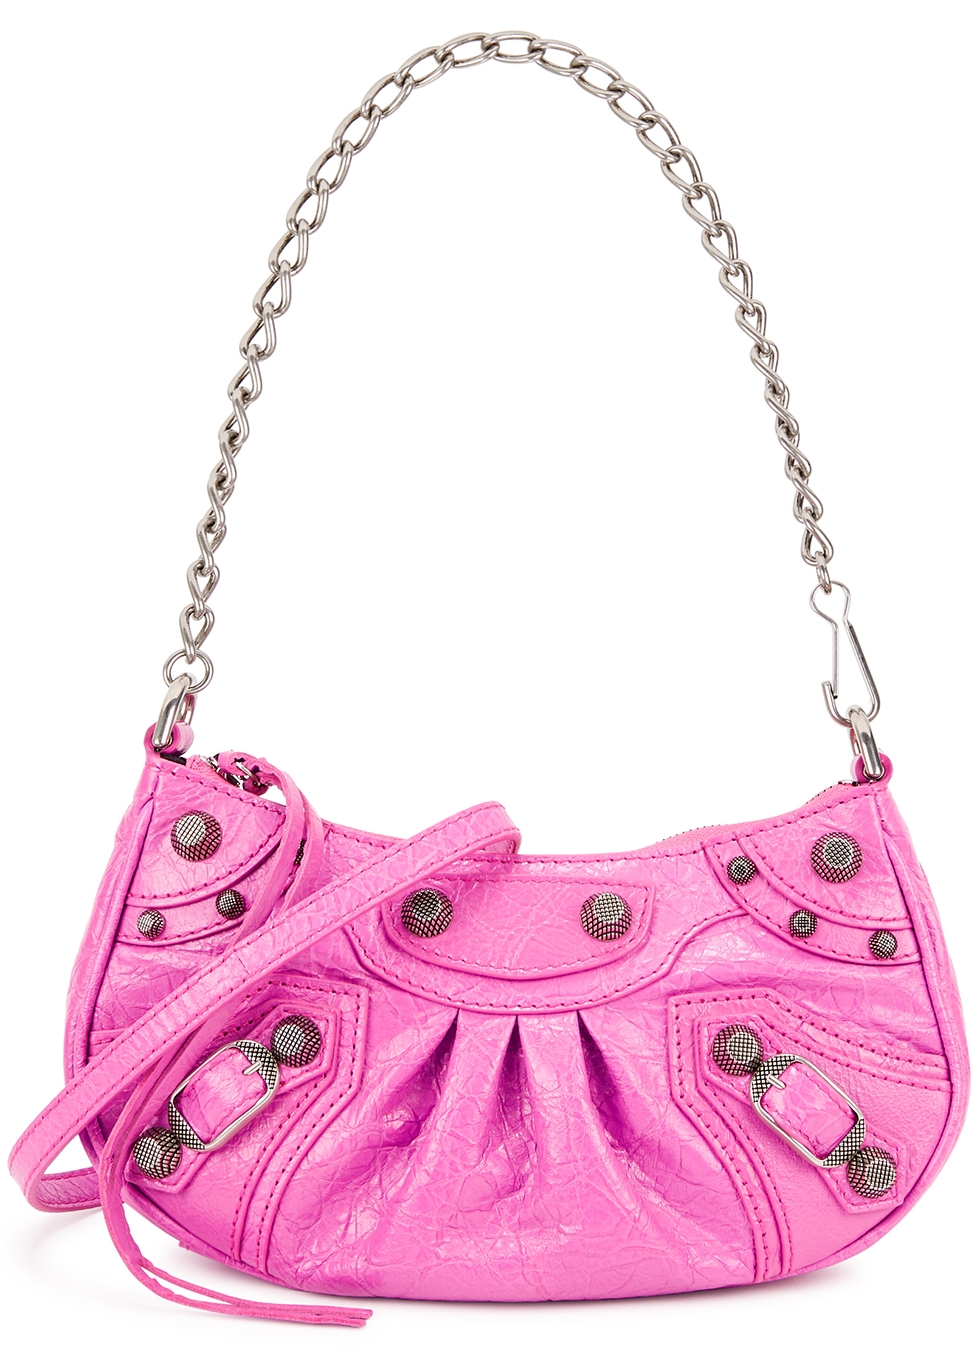 Balenciaga Le Cagole mini pink leather cross-body bag - Harvey Nichols